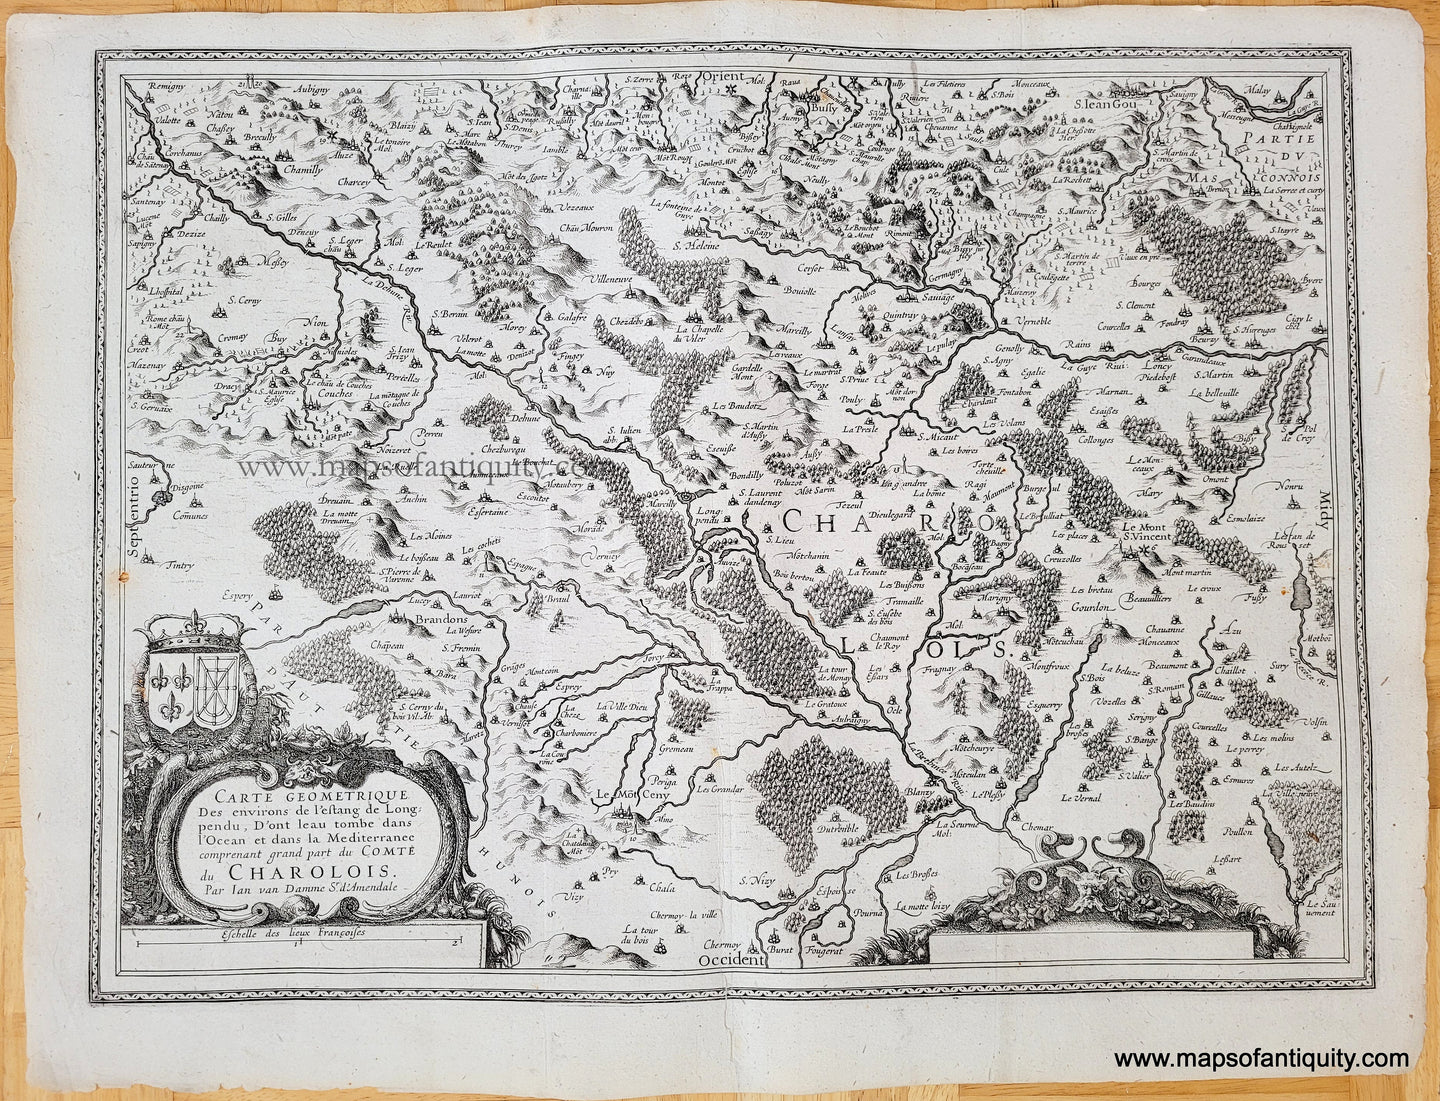 Genuine-Antique-Map-Carte-geometrique-des-environs-de-l'estang-de-Longpendu-:-d'ont-l'eau-tombe-dans-l'ocean-et-dans-la-Mediterranee-comprenant-grand-part-du-Comte-du-Charolois-1630s-Mercator/Hondius/Janssonius-Maps-Of-Antiquity